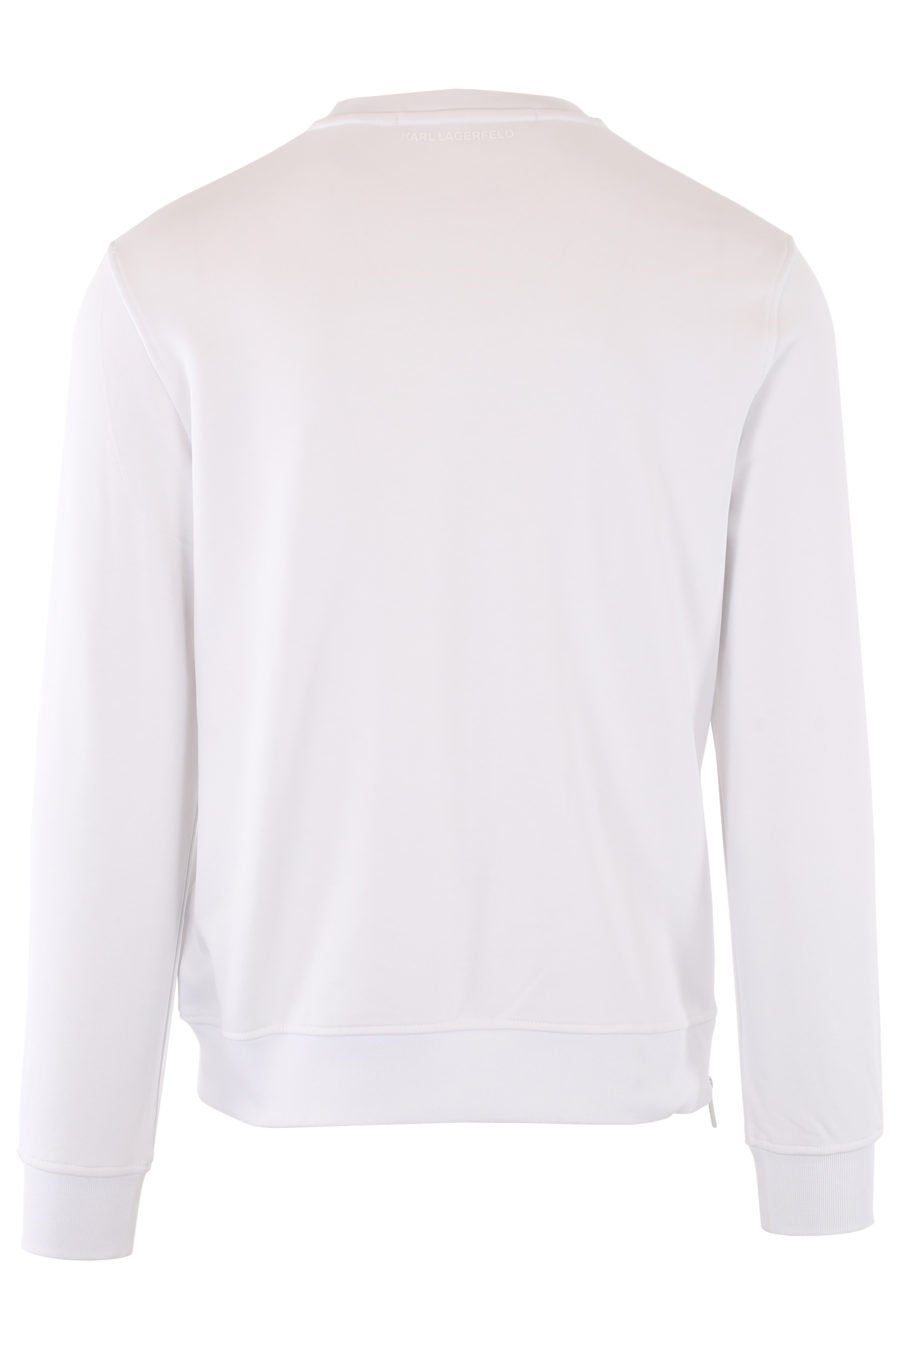 Weißes Sweatshirt mit mehrfarbigem blauem Logo - IMG 1387